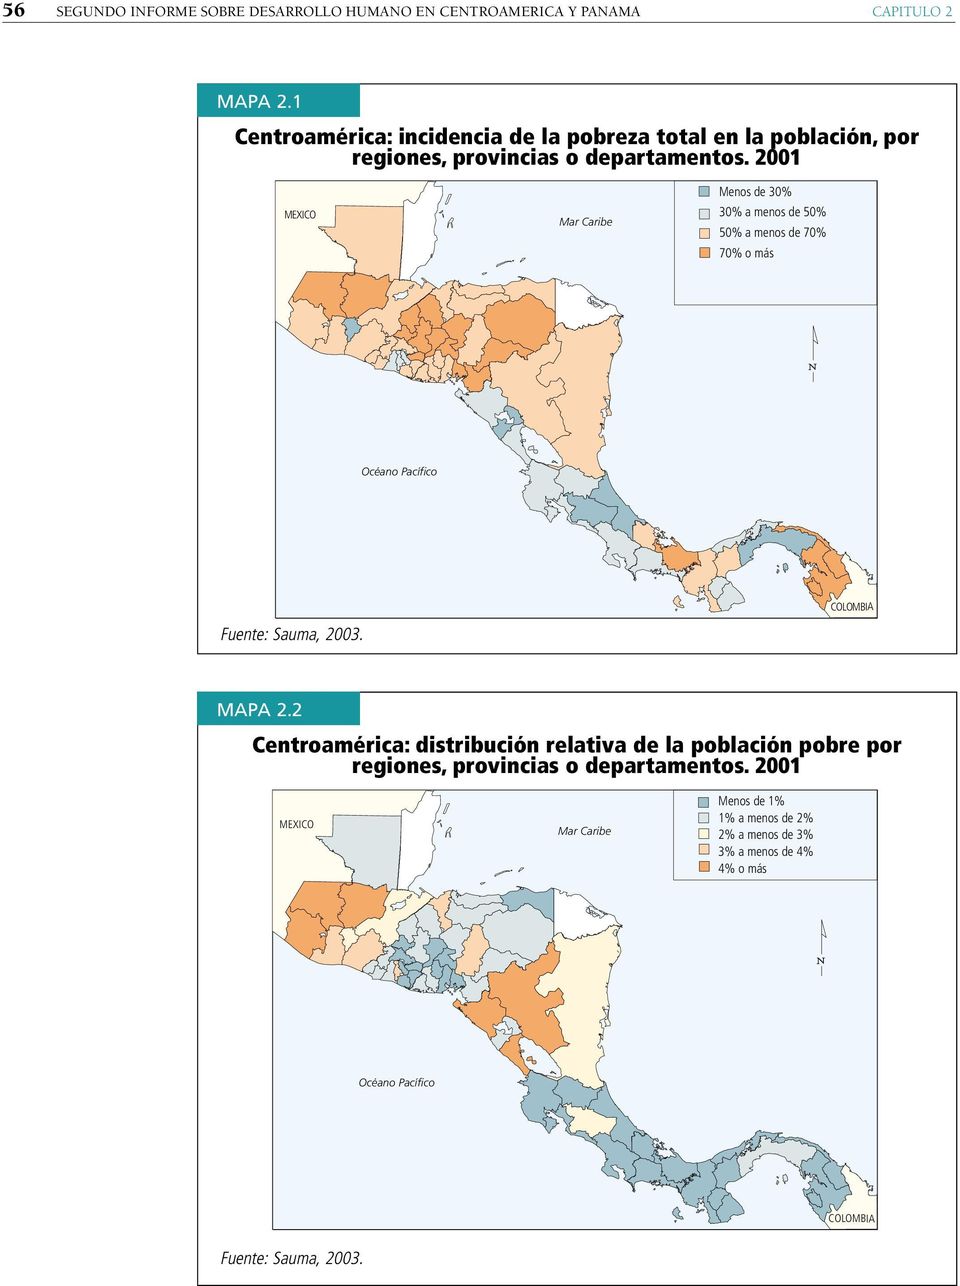 2001 MEXICO Mar Caribe Menos de 30% 30% a menos de 50% 50% a menos de 70% 70% o más Océano Pacífico COLOMBIA Fuente: Sauma, 2003. MAPA 2.